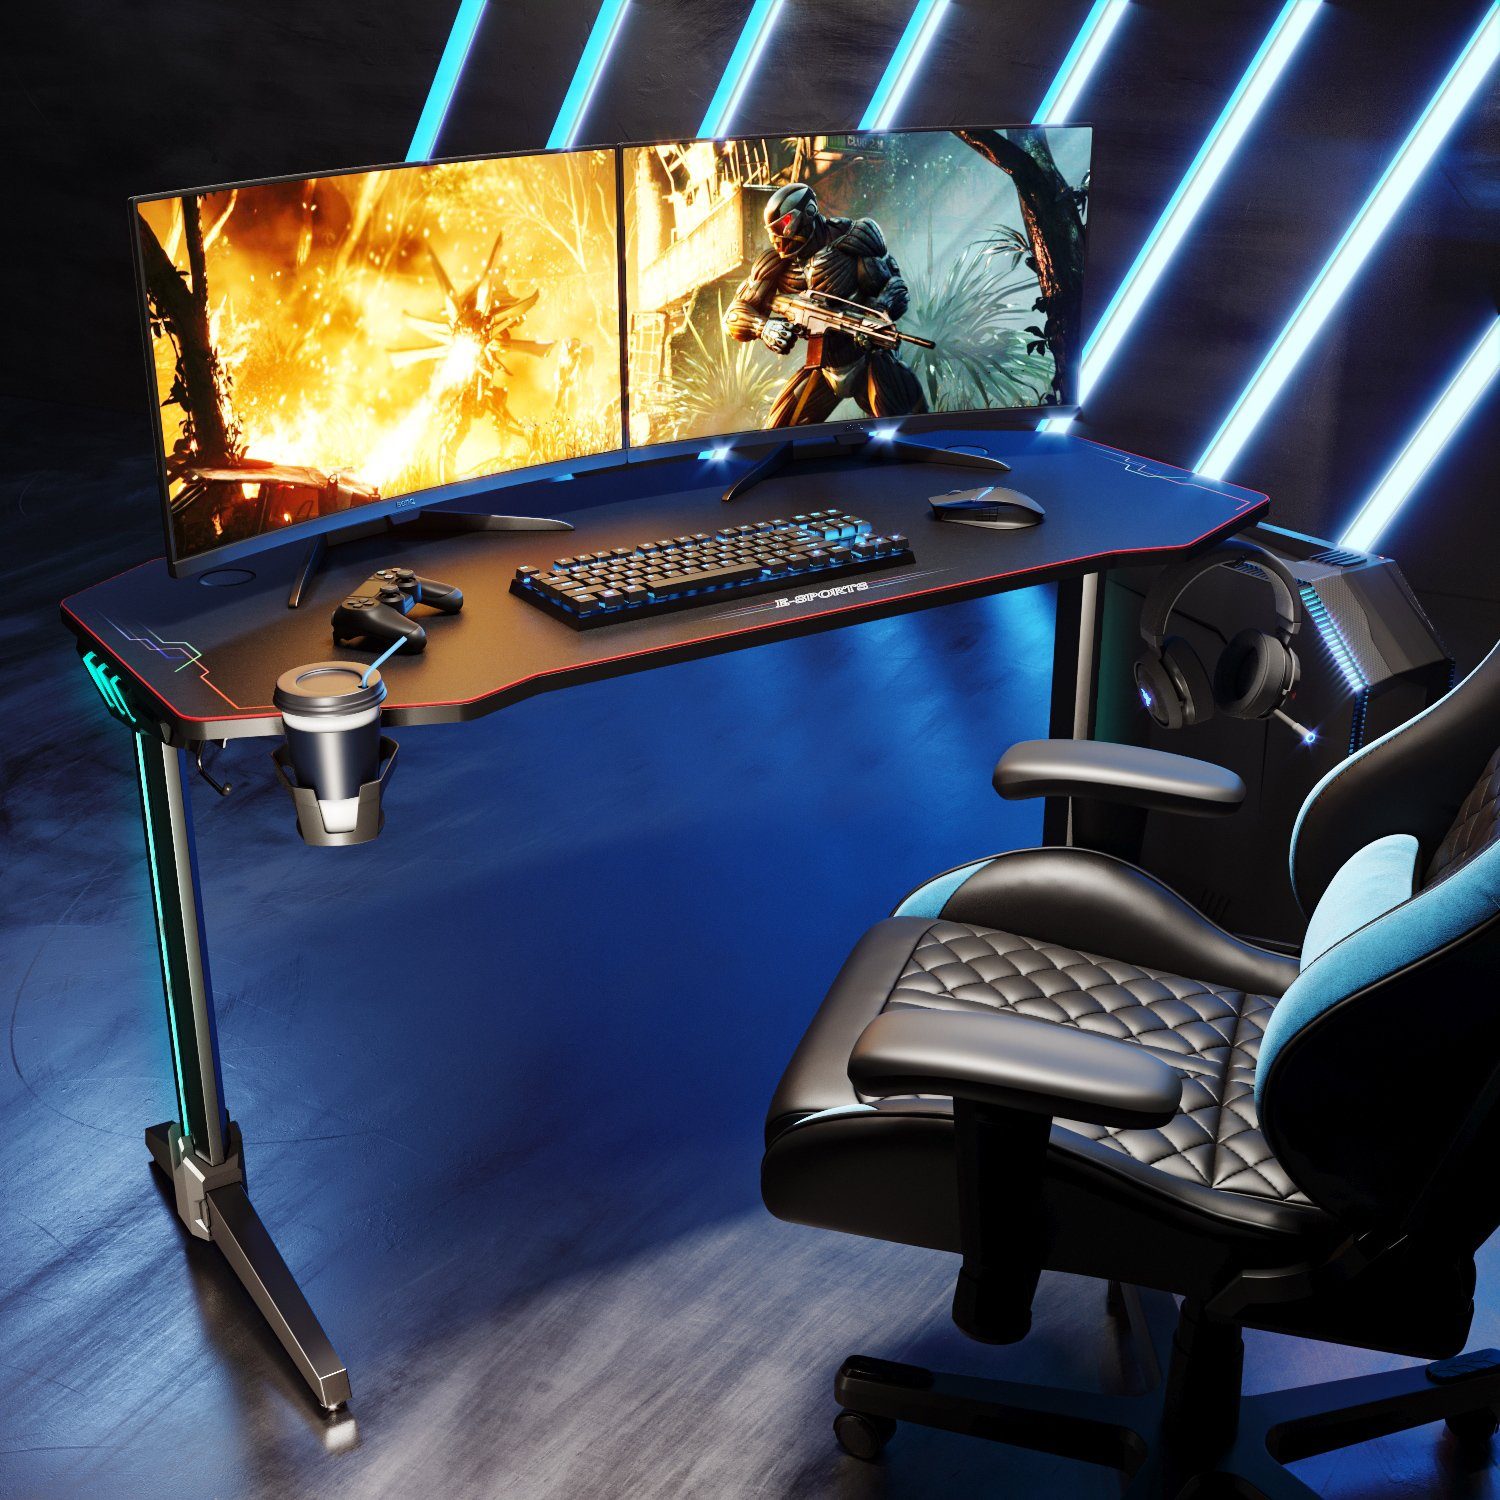 SONNI Gamingtisch Mehrzweckspieltisch in Schwarz 140x60x75 140cm breite cm, mit LED-Beleuchtung